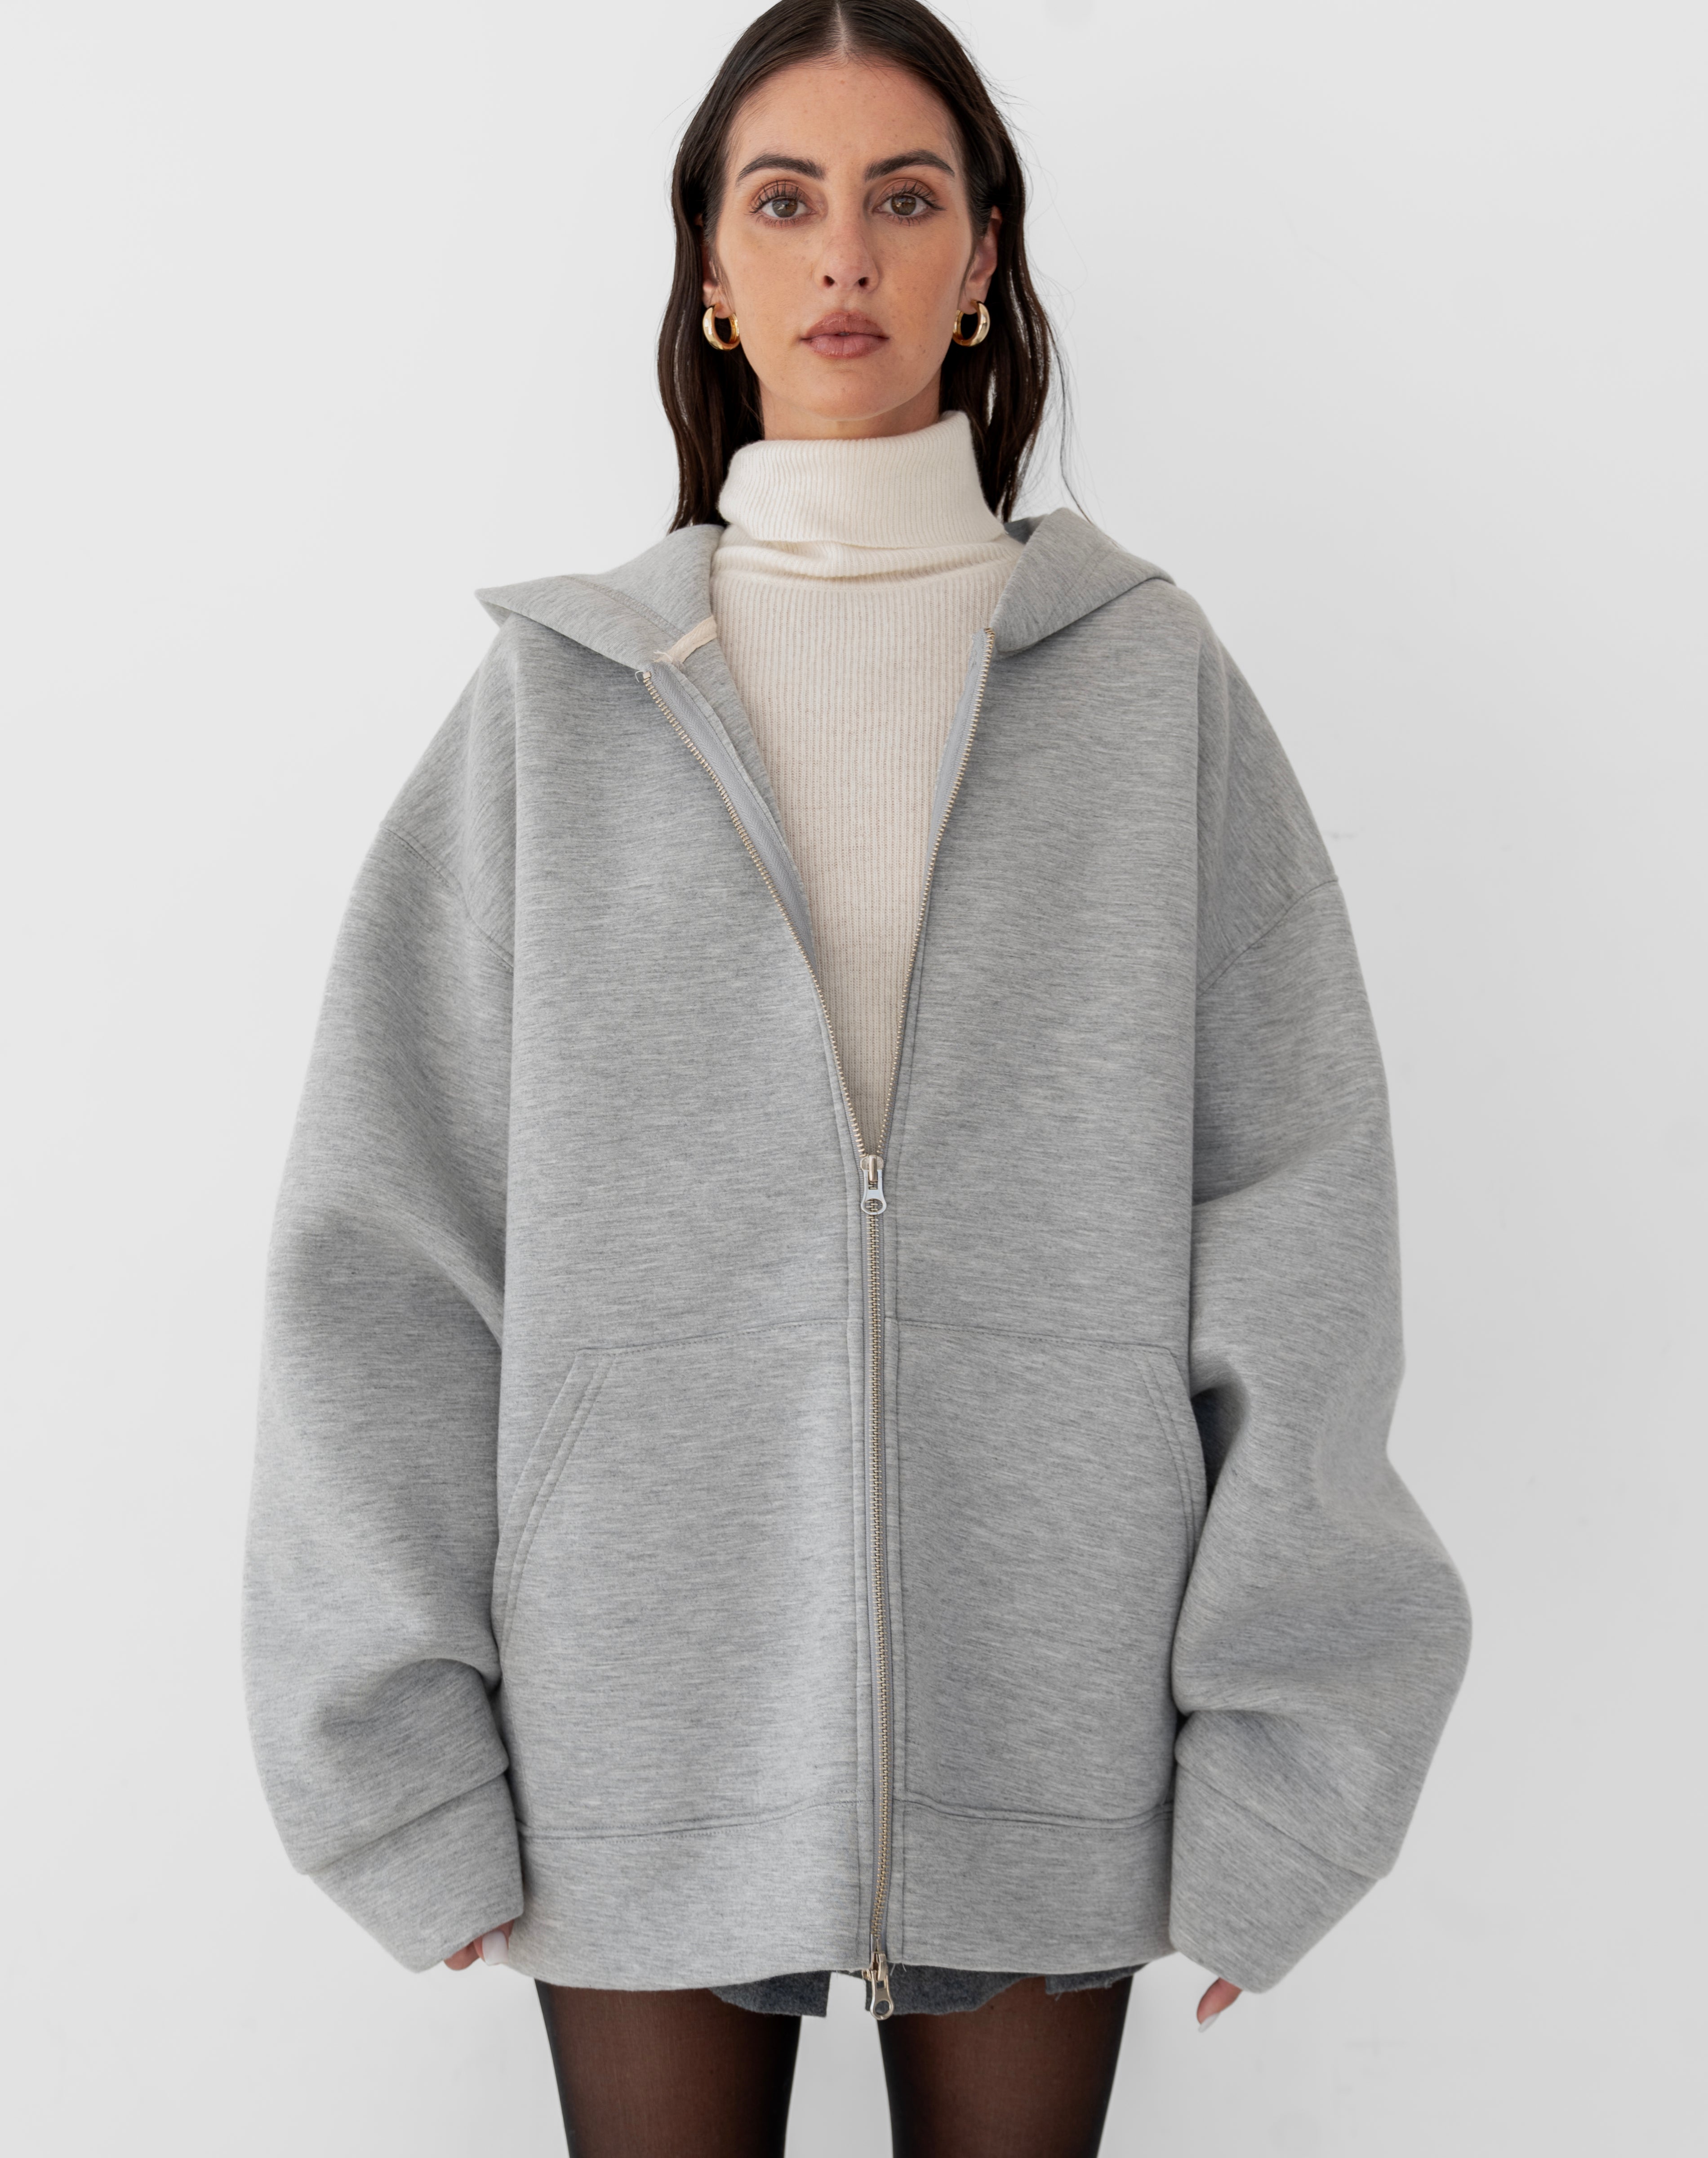 [PRE-ORDER]Blair Oversized Scuba Zip Up Sweatshirt, Grey